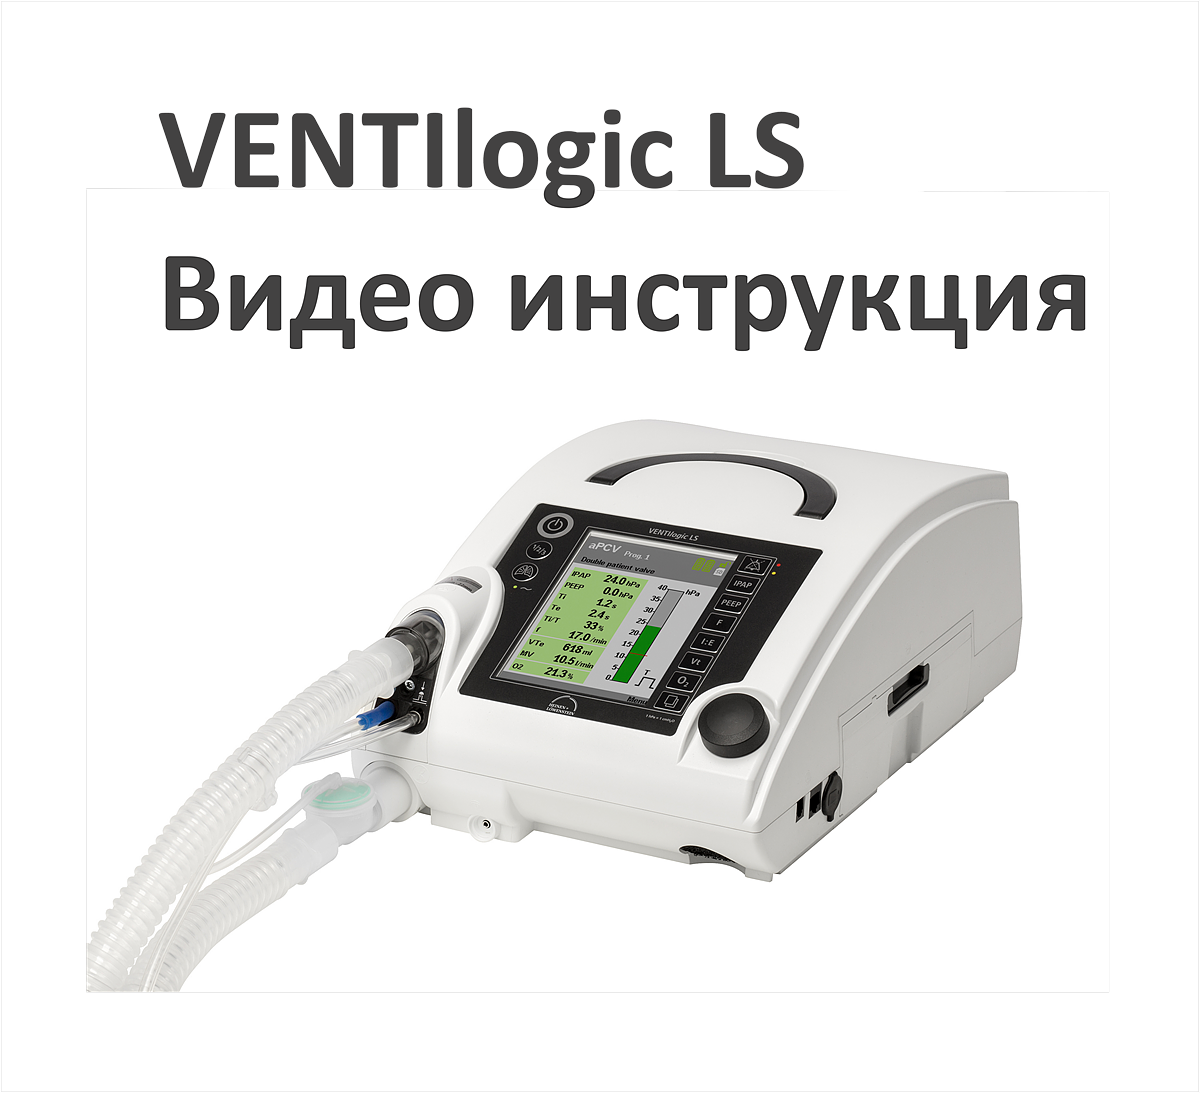 Видео инструкция по работе с аппаратом ИВЛ VENTIlogic LS